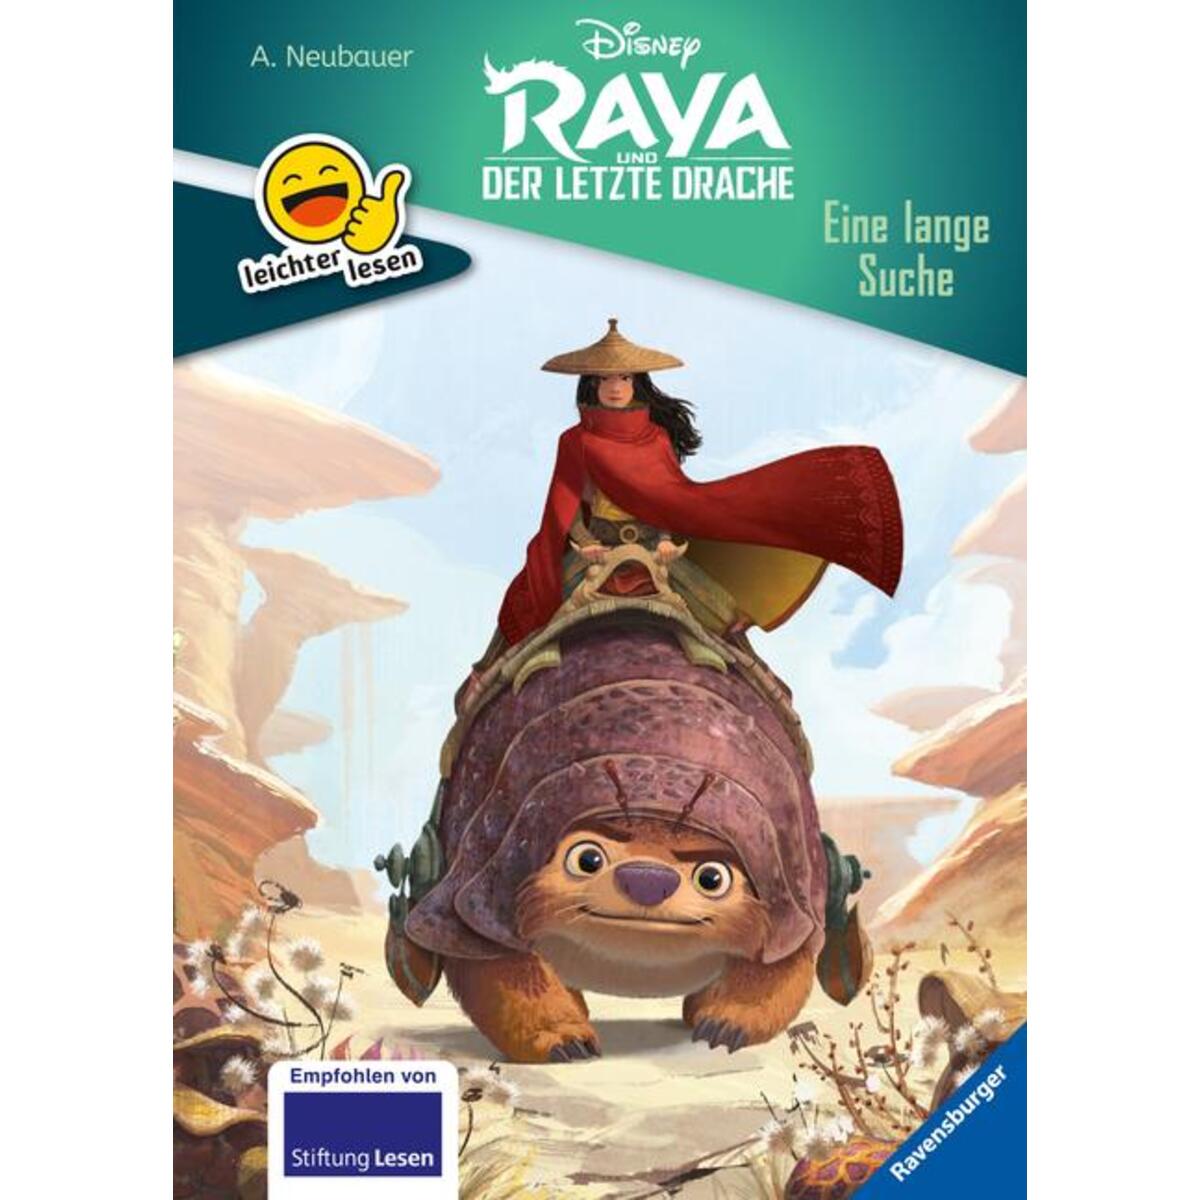 Erstleser - leichter lesen: Disney Raya und der letzte Drache: Eine lange Suche von Ravensburger Verlag